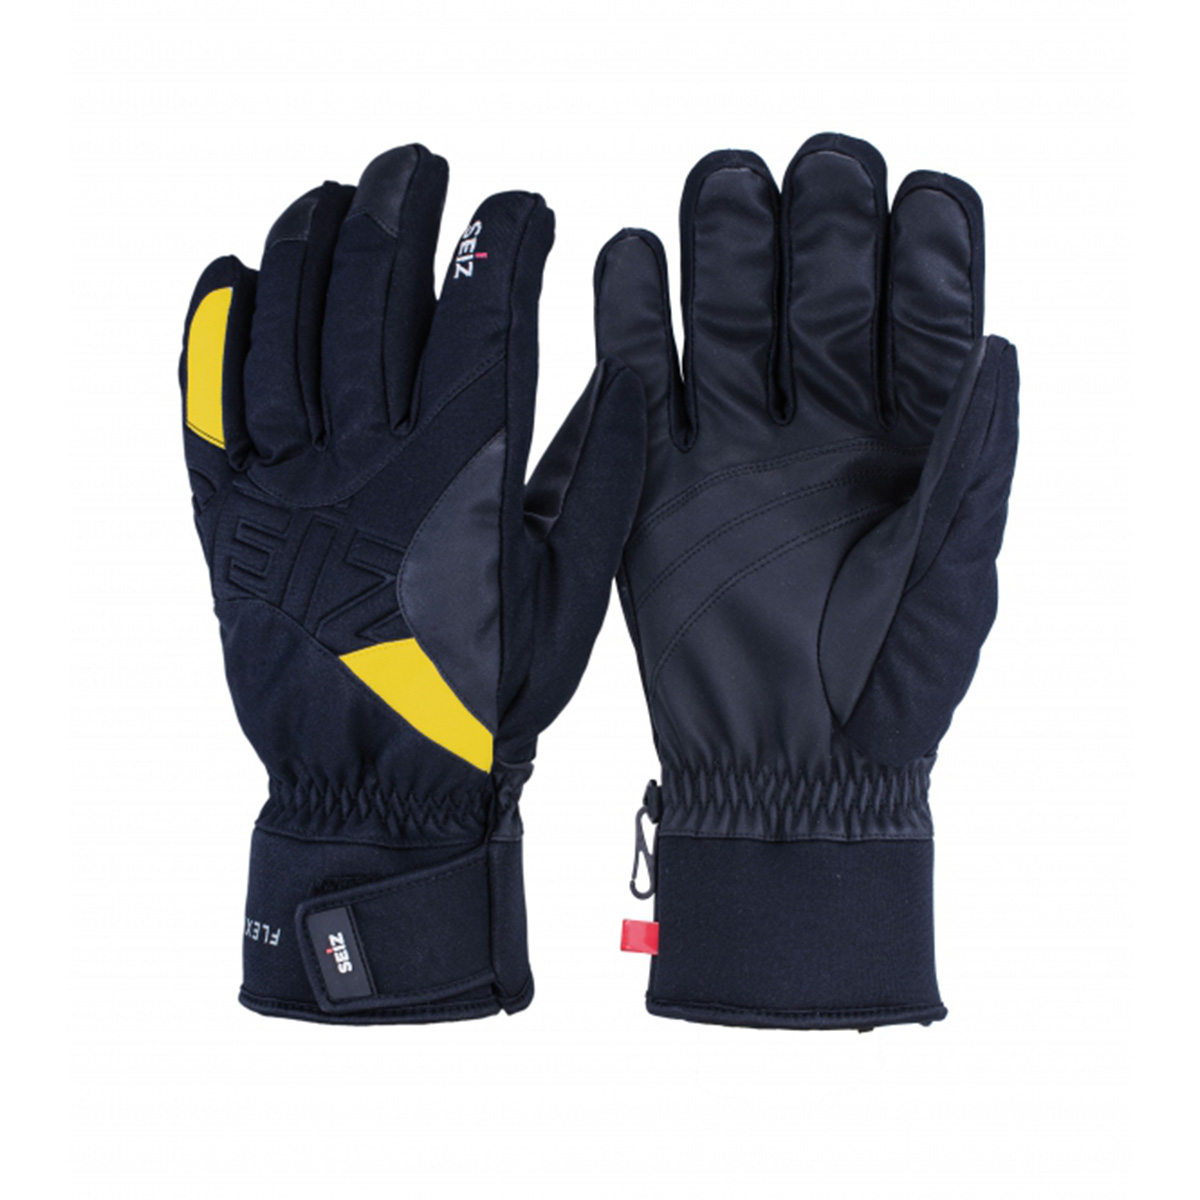 Seiz Handschuhe FLEXIBLE Winter Schnee Unisex WGL00010 01 schwarz gelb